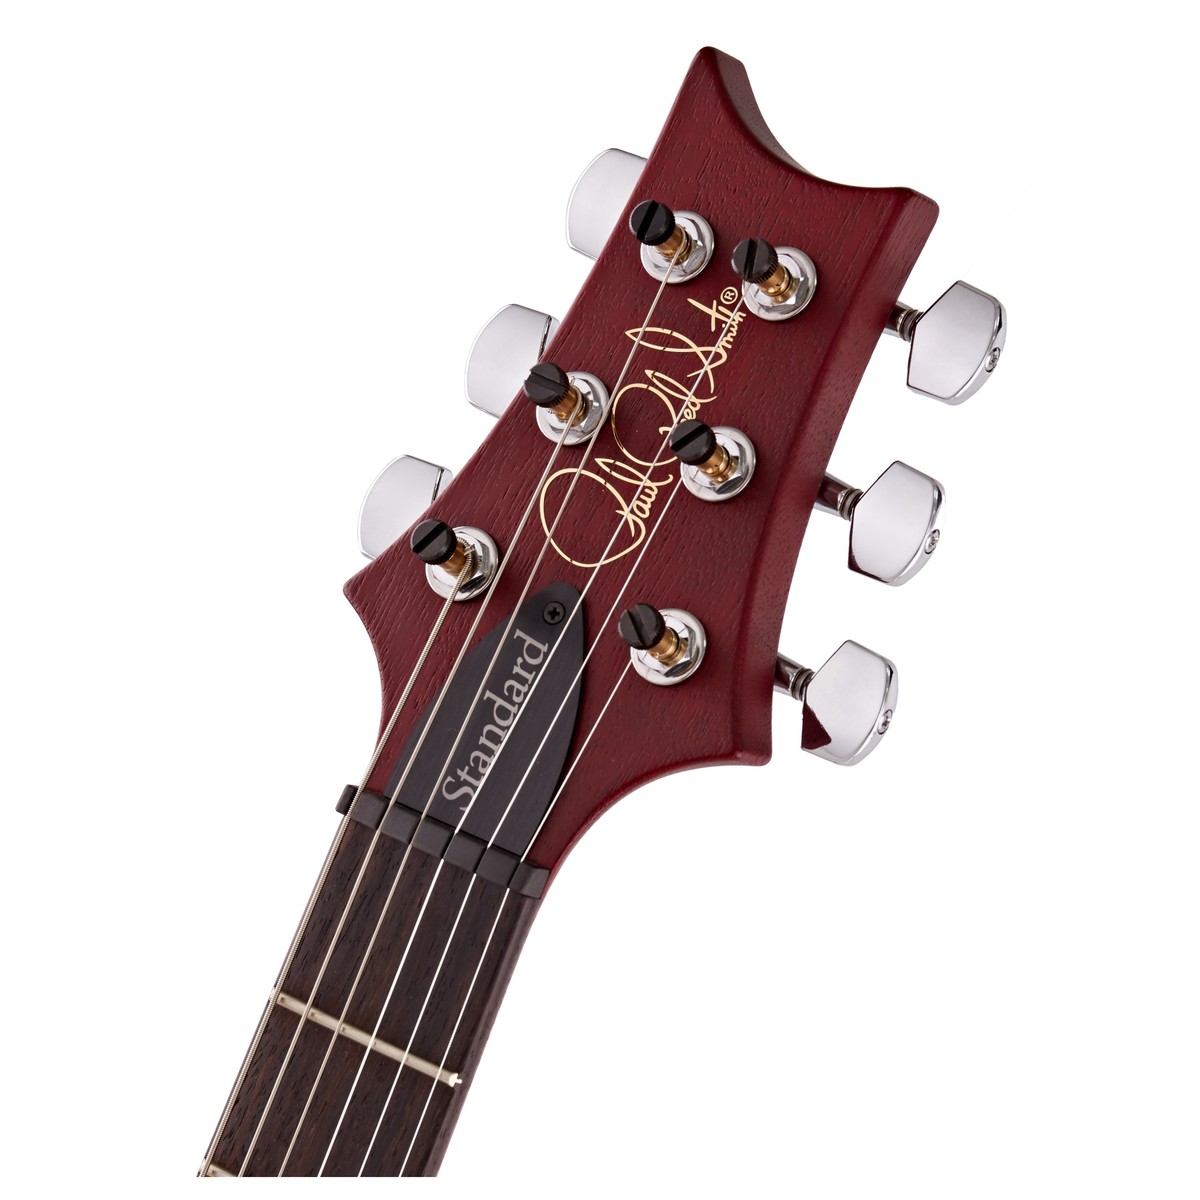 Prs S2 Standard 22 Satin Usa 2h Trem Rw - Vintage Cherry - Guitarra eléctrica de doble corte. - Variation 4